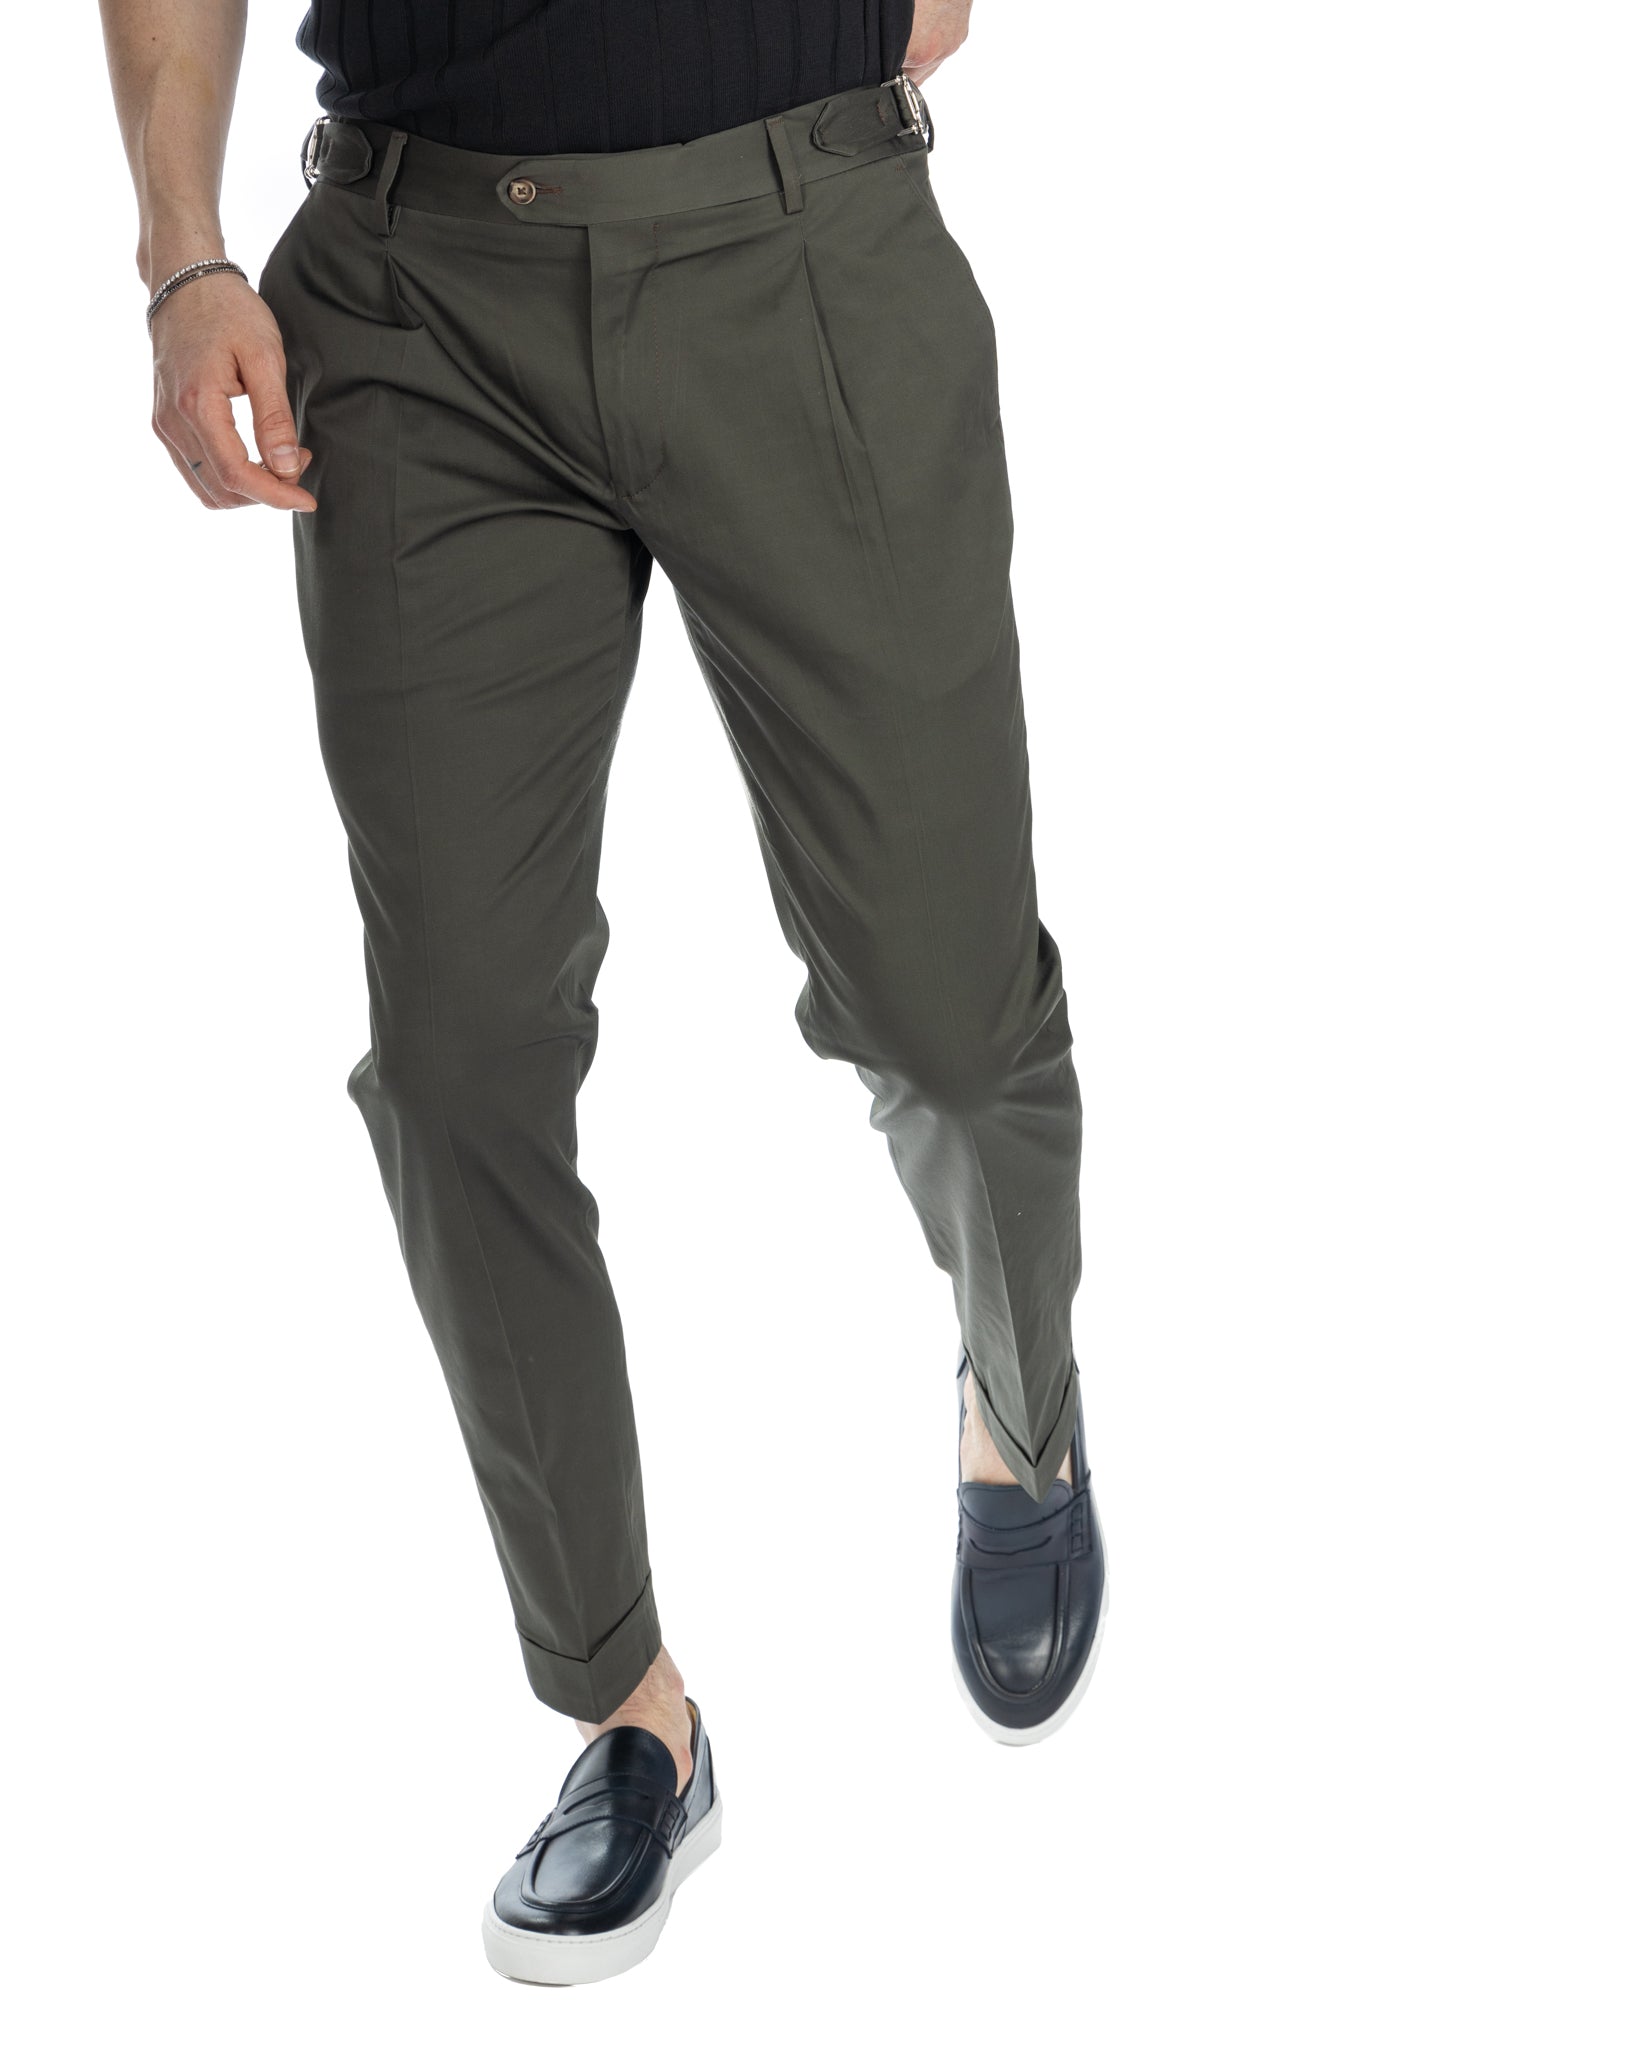 James - pantalon militaire taille haute à boucles